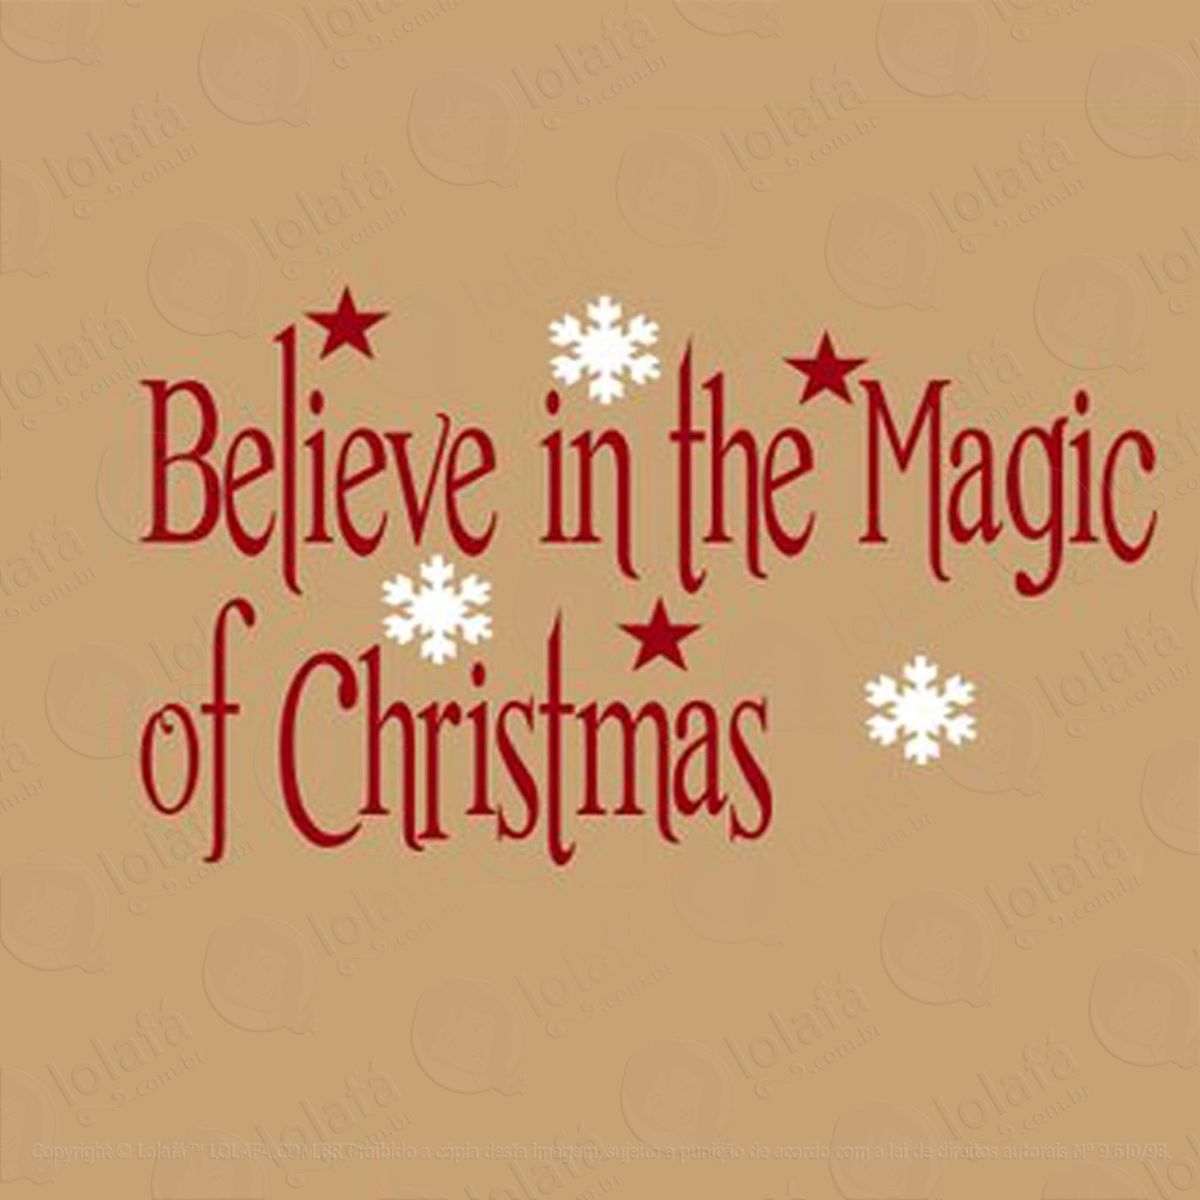 acredite na magia adesivo de natal para vitrine, parede, porta de vidro - decoração natalina mod:3